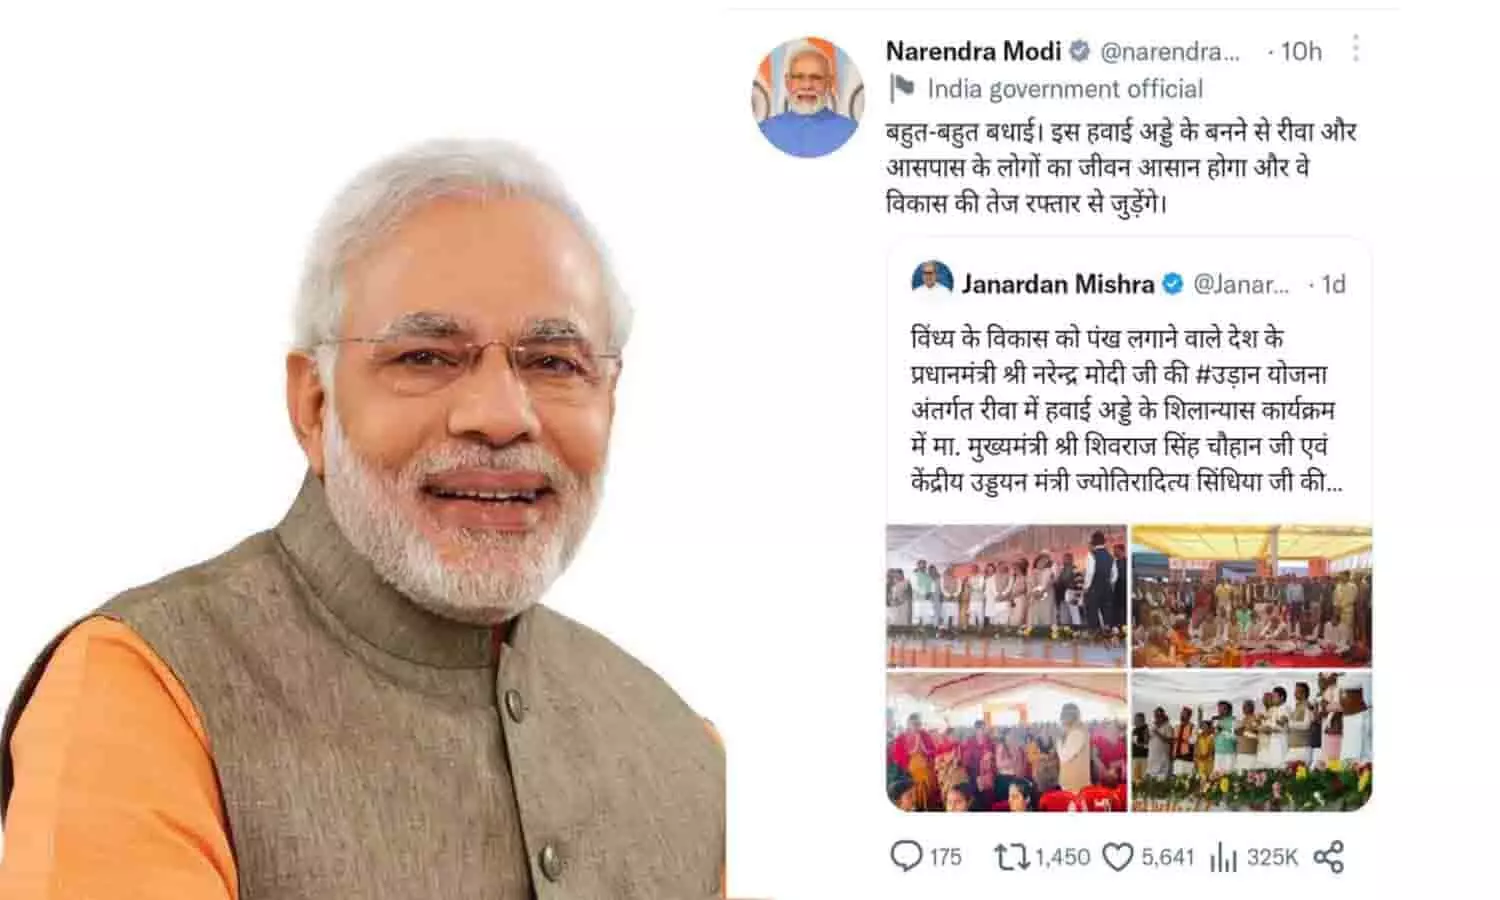 प्रधानमंत्री नरेन्द्र मोदी ने रीवा के लोगों को एयरपोर्ट खोलने पर बधाई दी